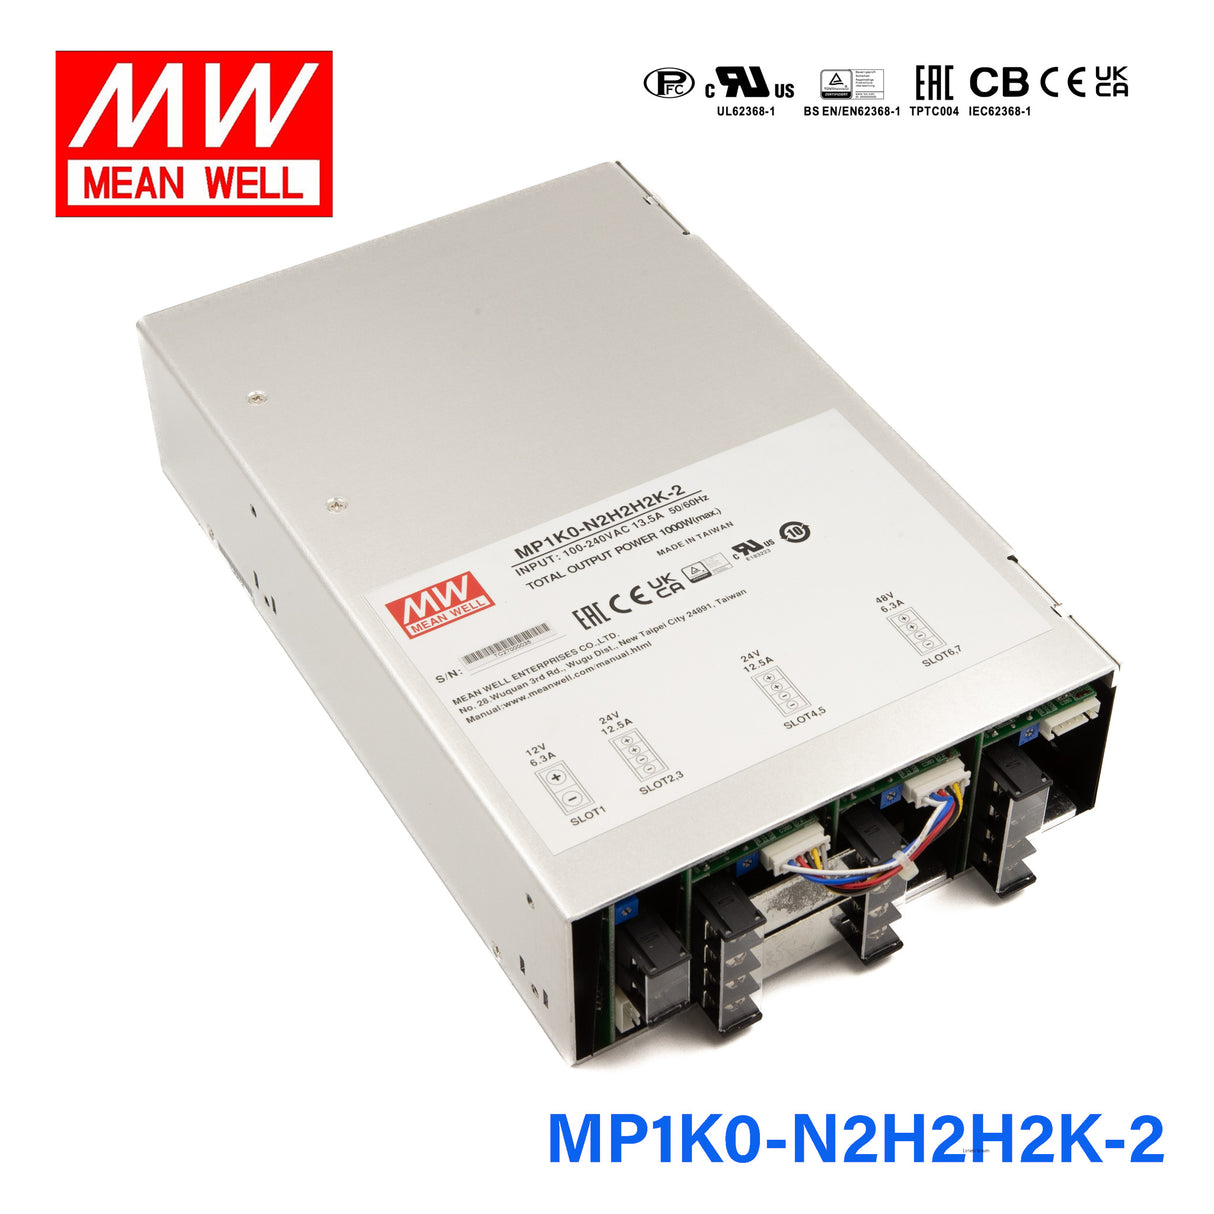 Mean Well MP1K0-N2H2H2K-2 Modular Power Supply, 1KW, 7 Slot Output, 12V * 1, 24V * 4, 48V * 2